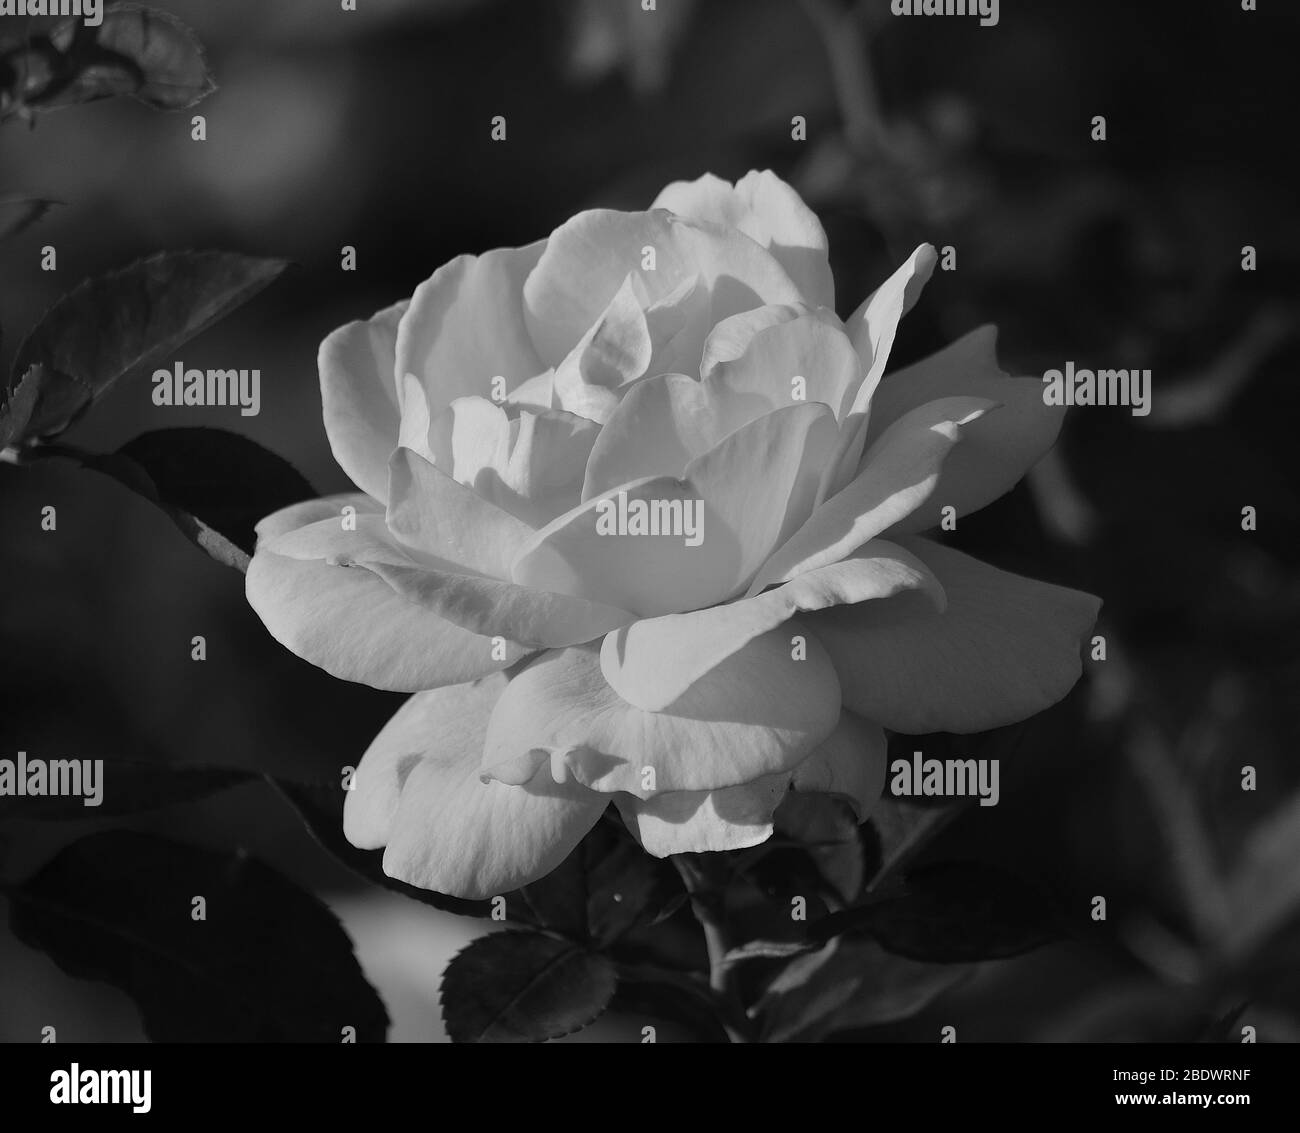 Closeup of white rose in full splendor among leaves, monochrome effect Stock Photo